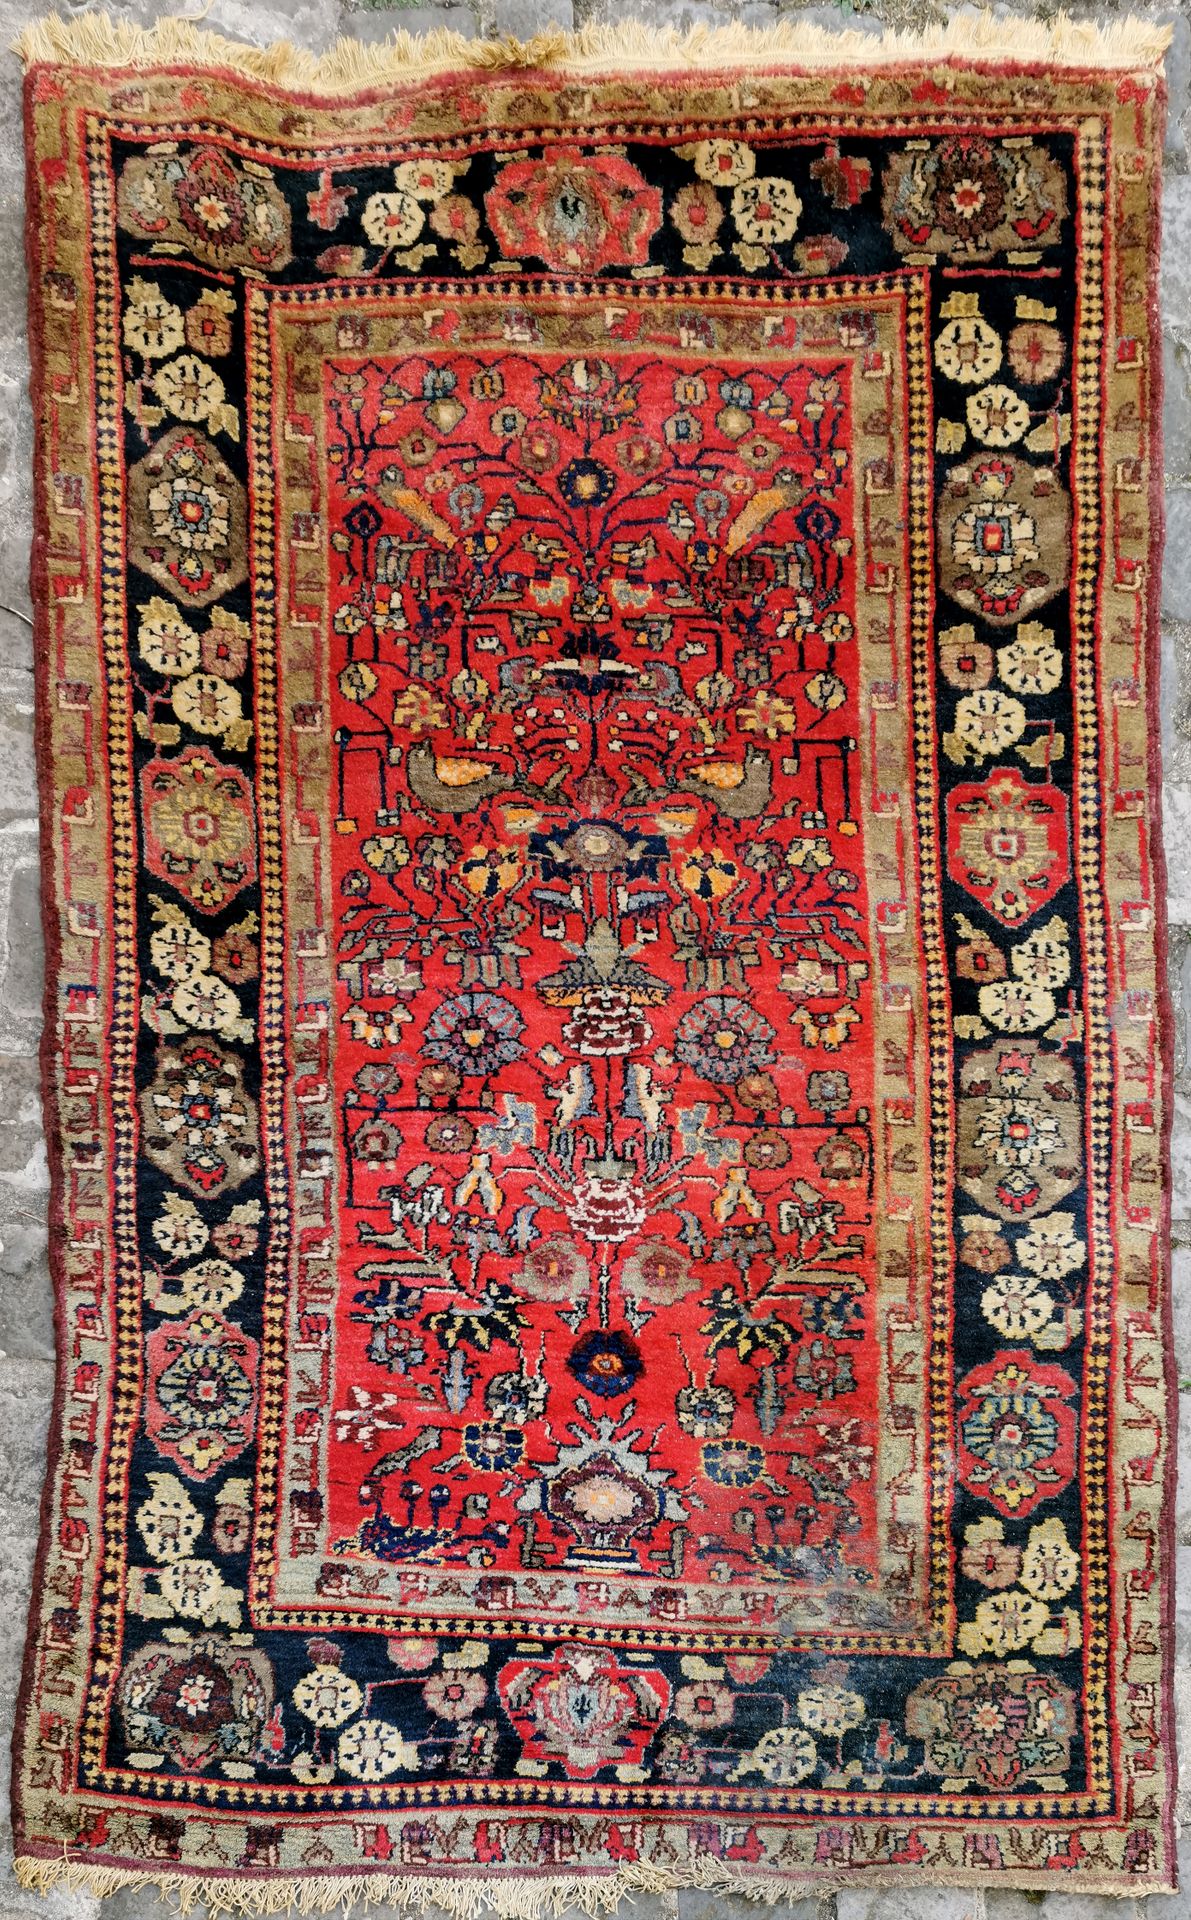 Null 哈马丹（伊朗）的莉莉安地区，约1970年。

技术特点：在棉质基础上的羊毛丝绒。

红宝石领域装饰着几何风格的多色花鸟构图。

有些氧化和自然磨损。
&hellip;